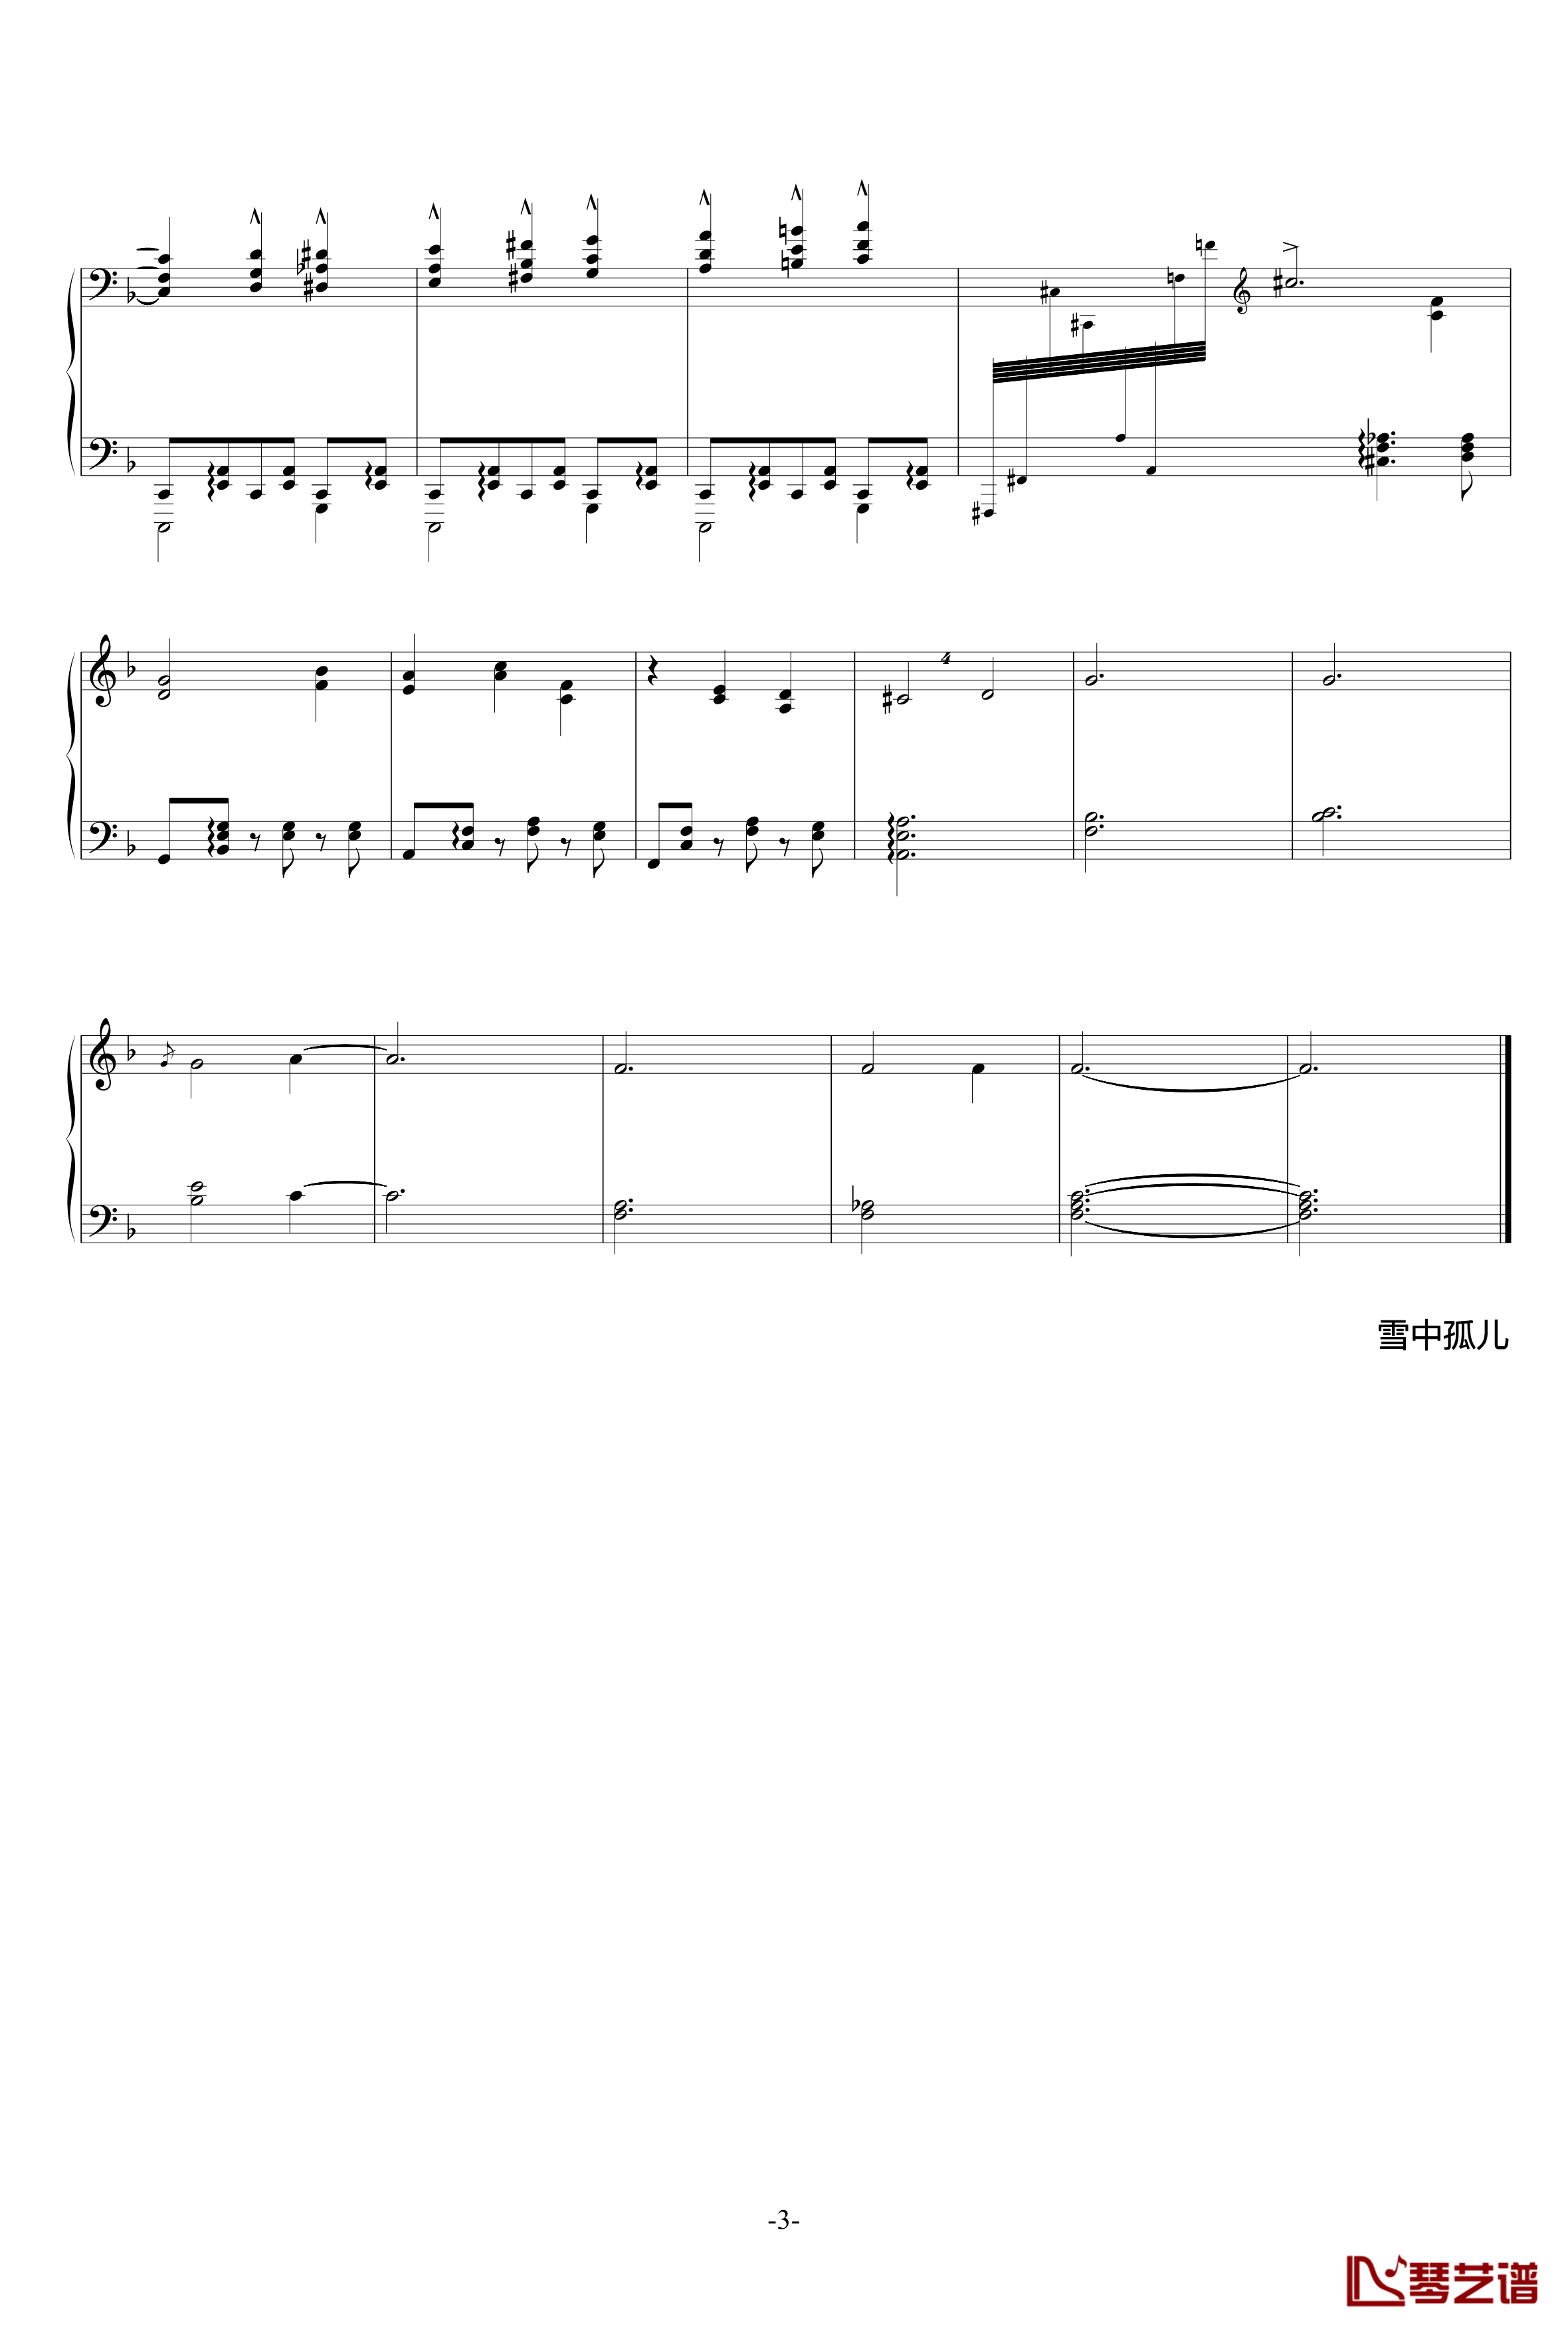 冥想集钢琴谱-修改-升c小调9